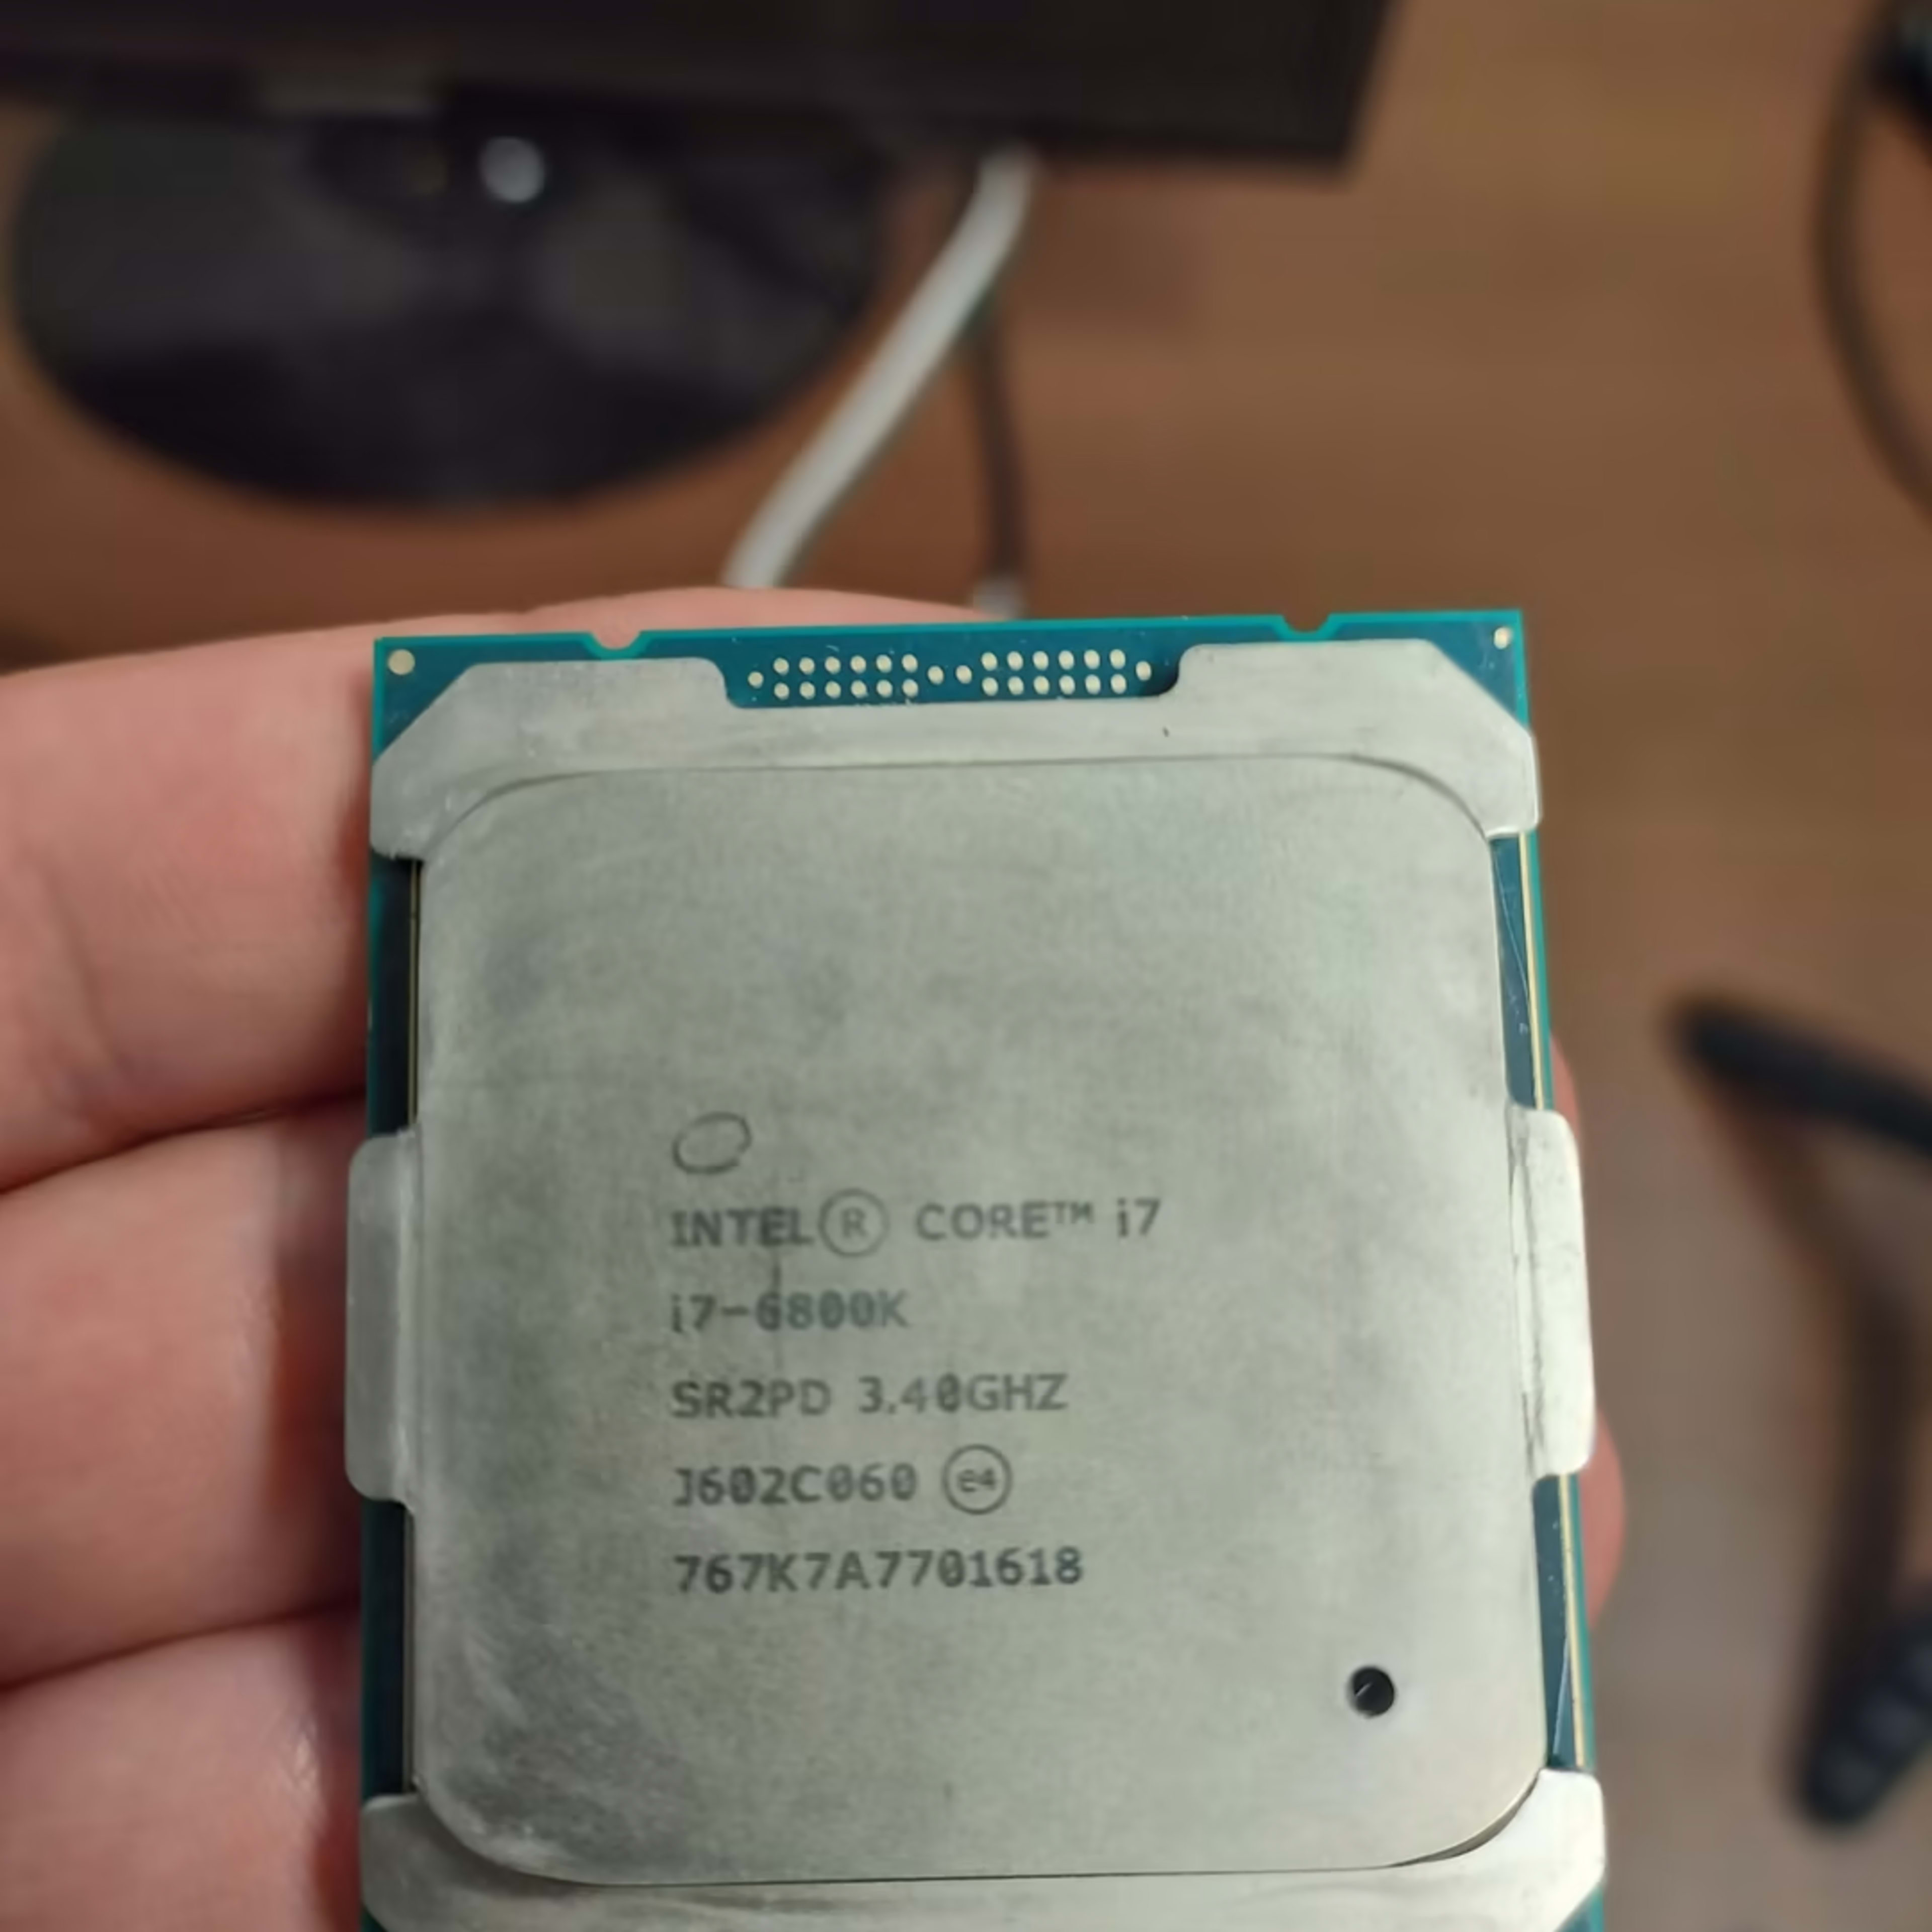 Intel Core i7-6800k CPU